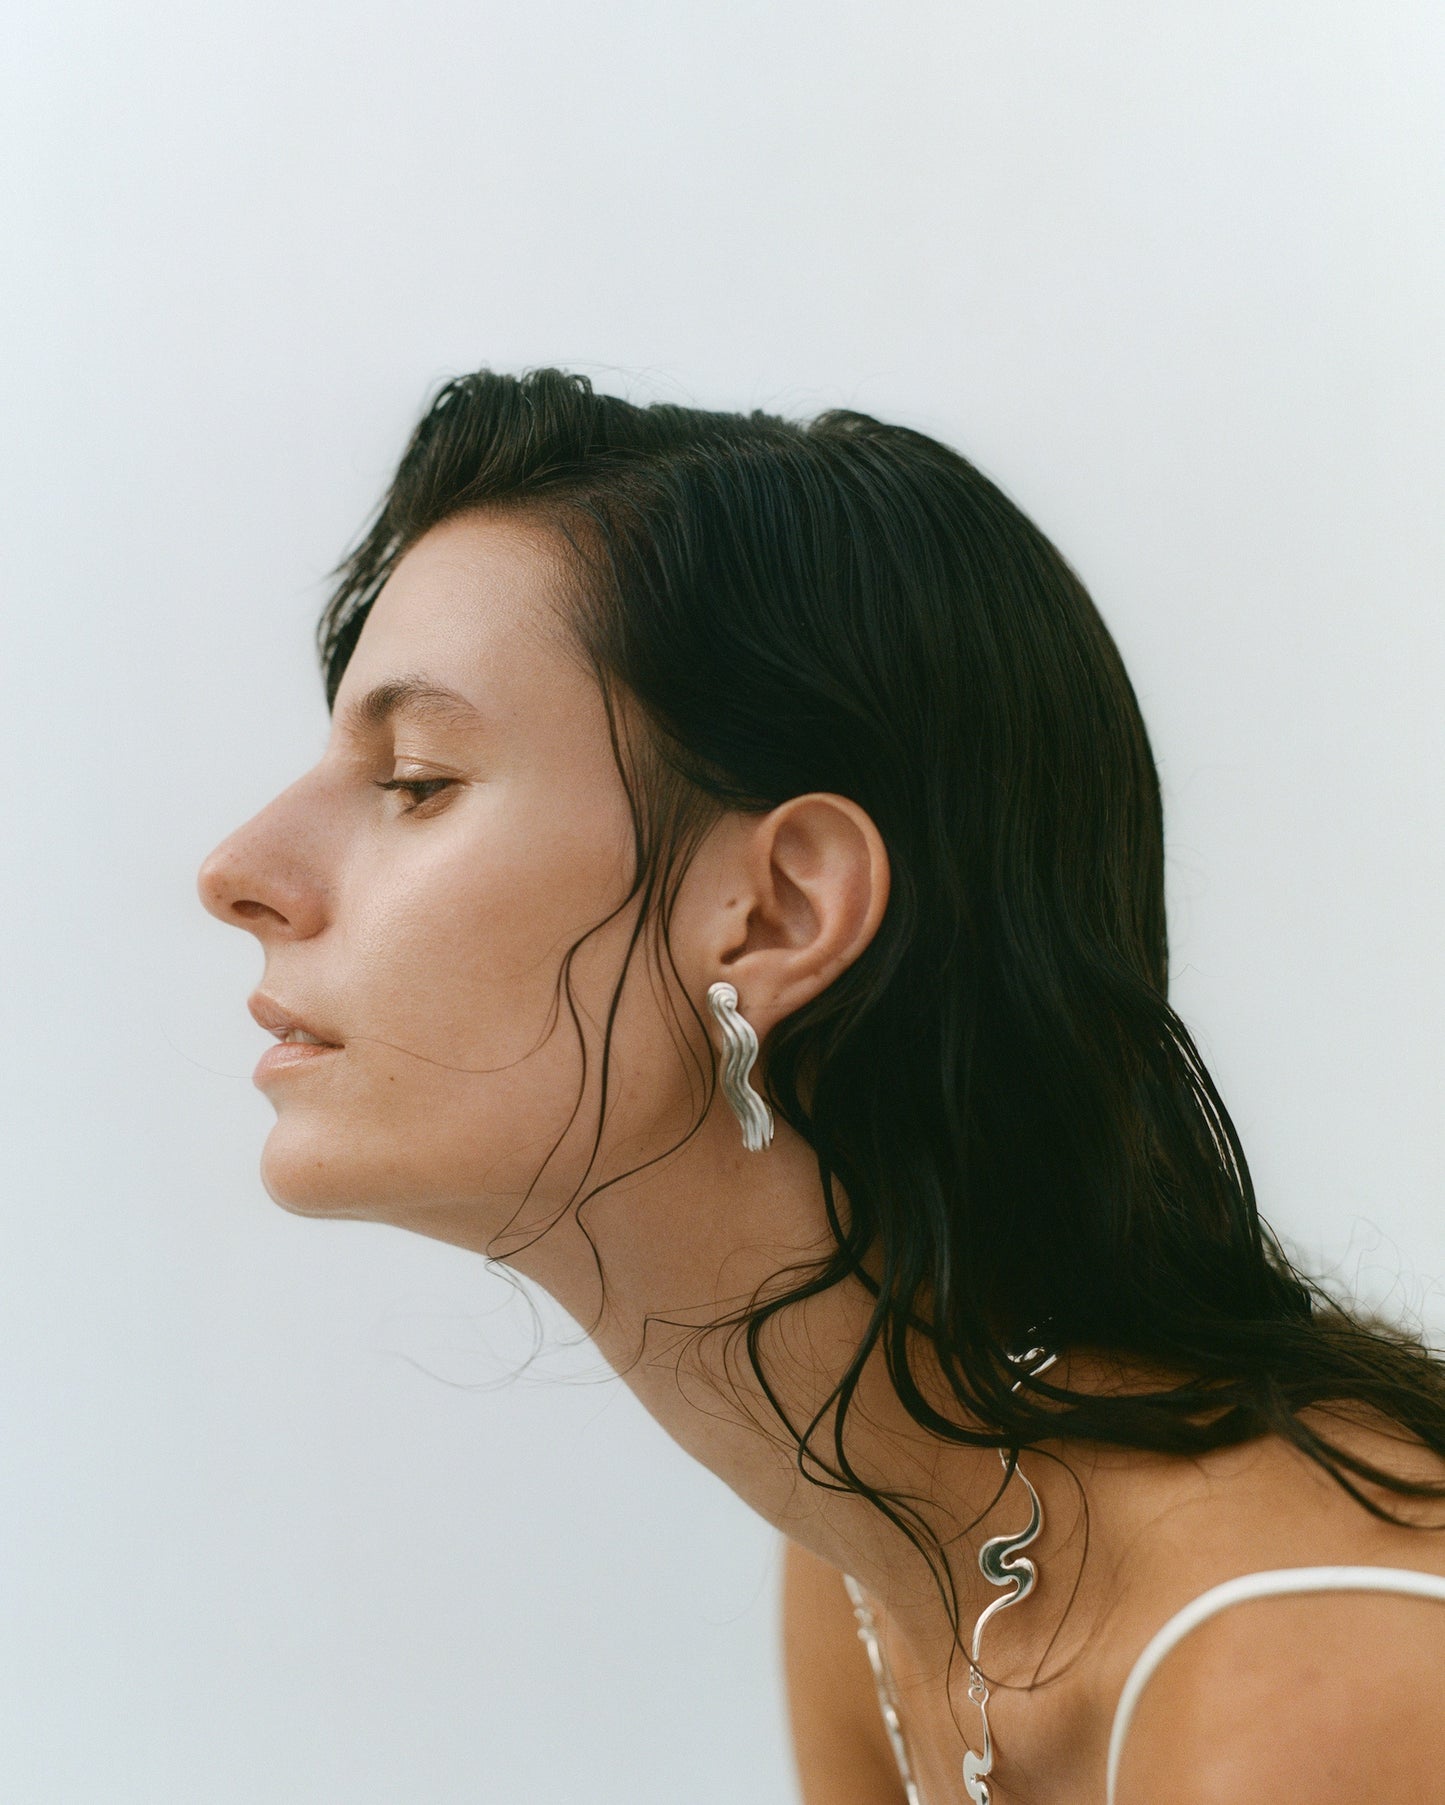 Female model in profile, wearing silver jewelry